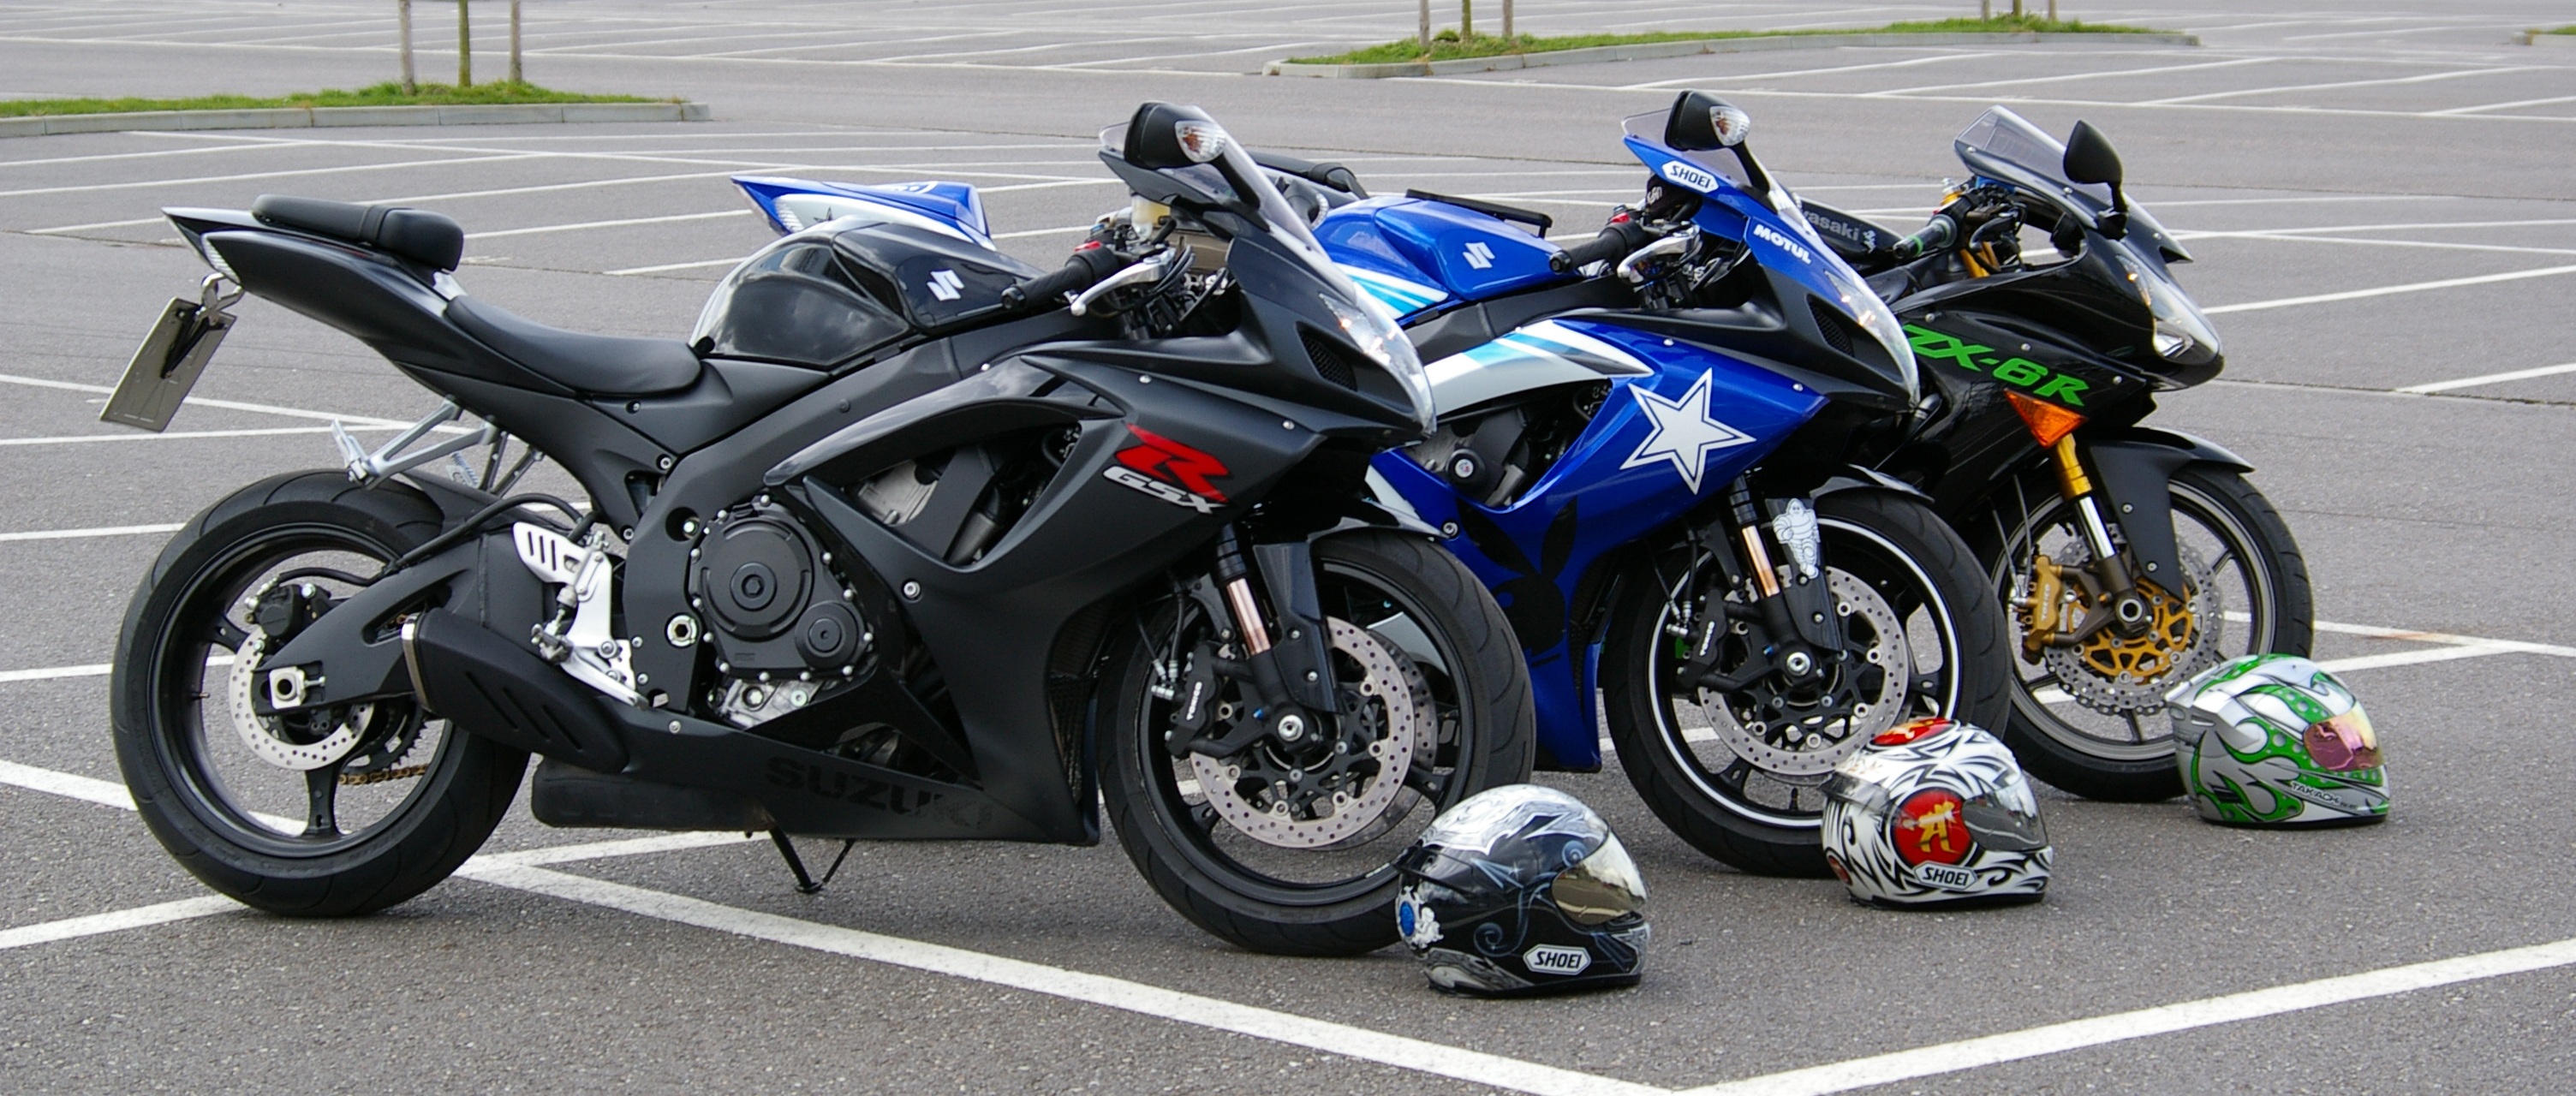 Free photo Three Kawasaki motorcycles in a parking lot.